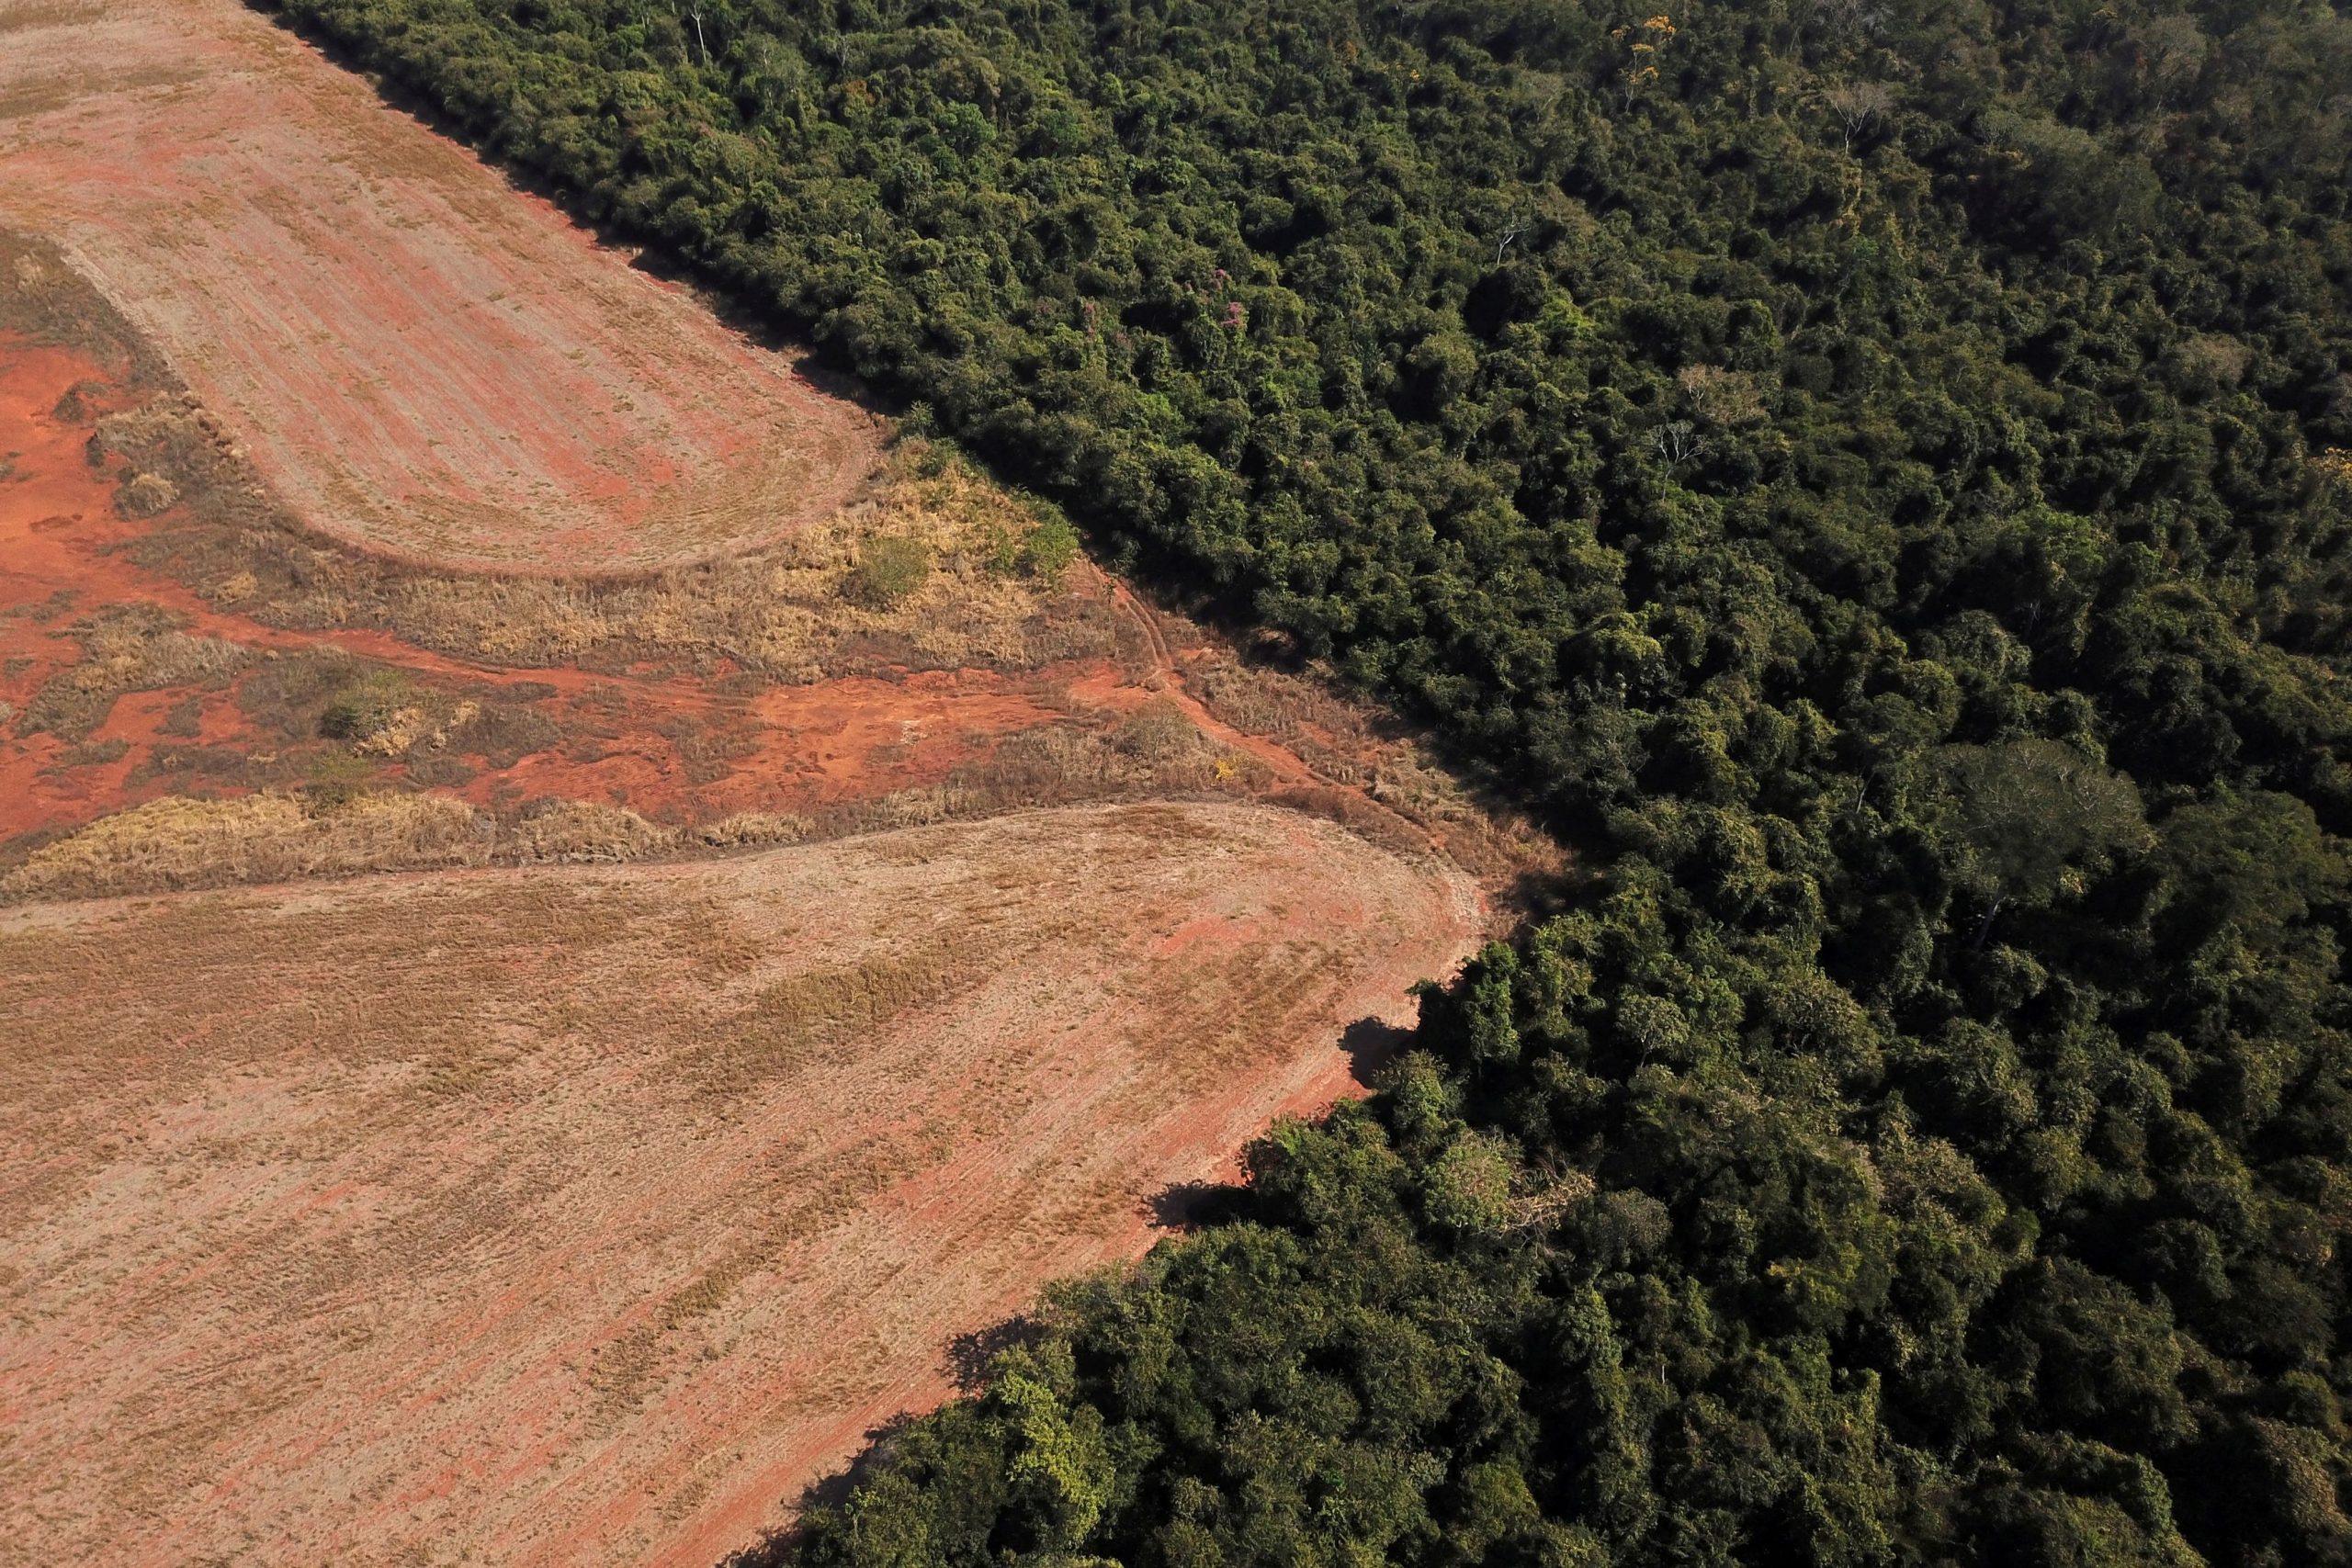 Αποψίλωση δασών: Η ΕΕ απαγορεύει τις εισαγωγές 6 δημοφιλών προϊόντων